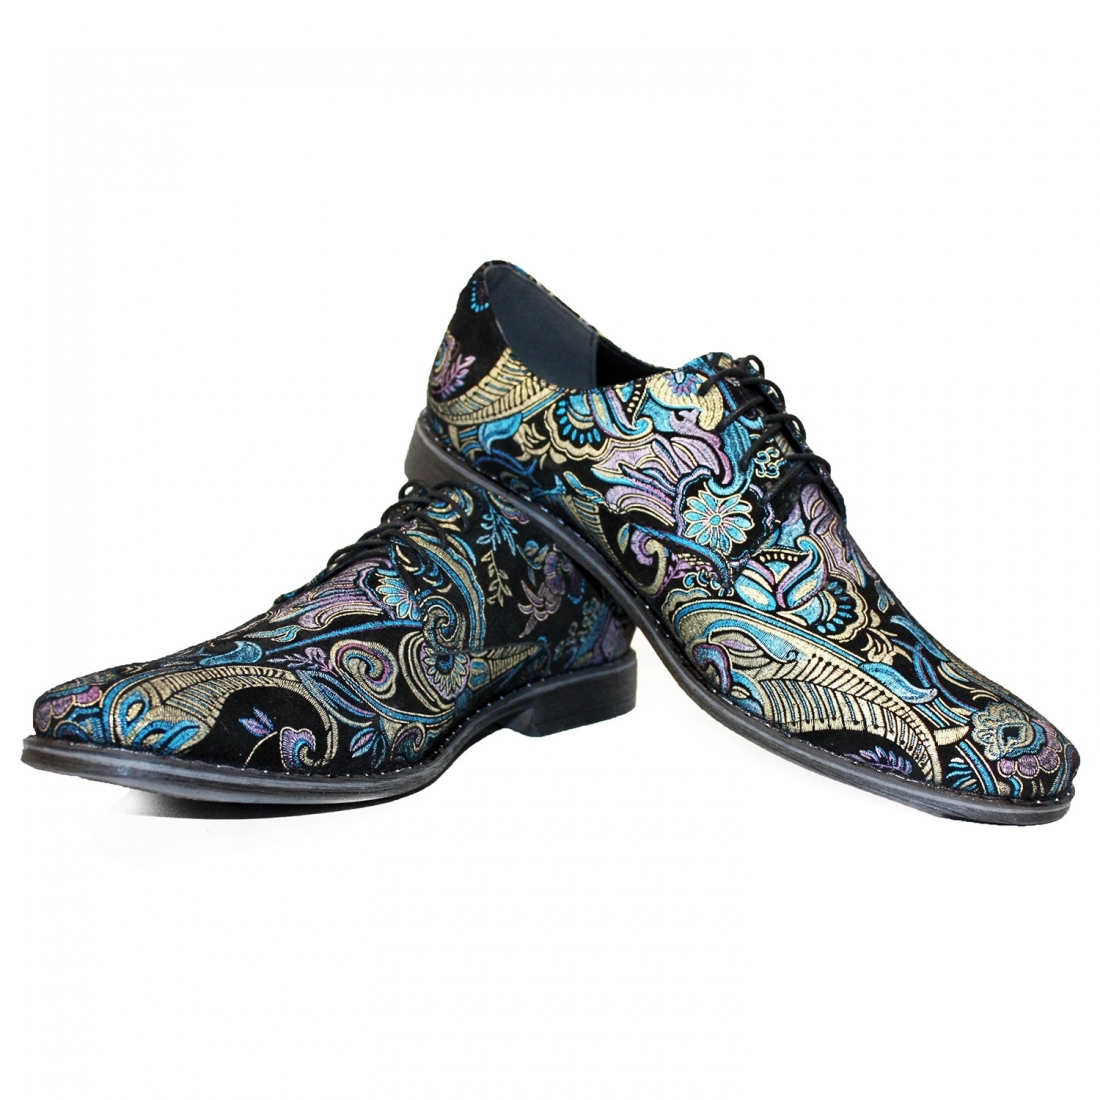 Modello Shpanerro - Scarpe Classiche - Handmade Colorful Italian Leather Shoes